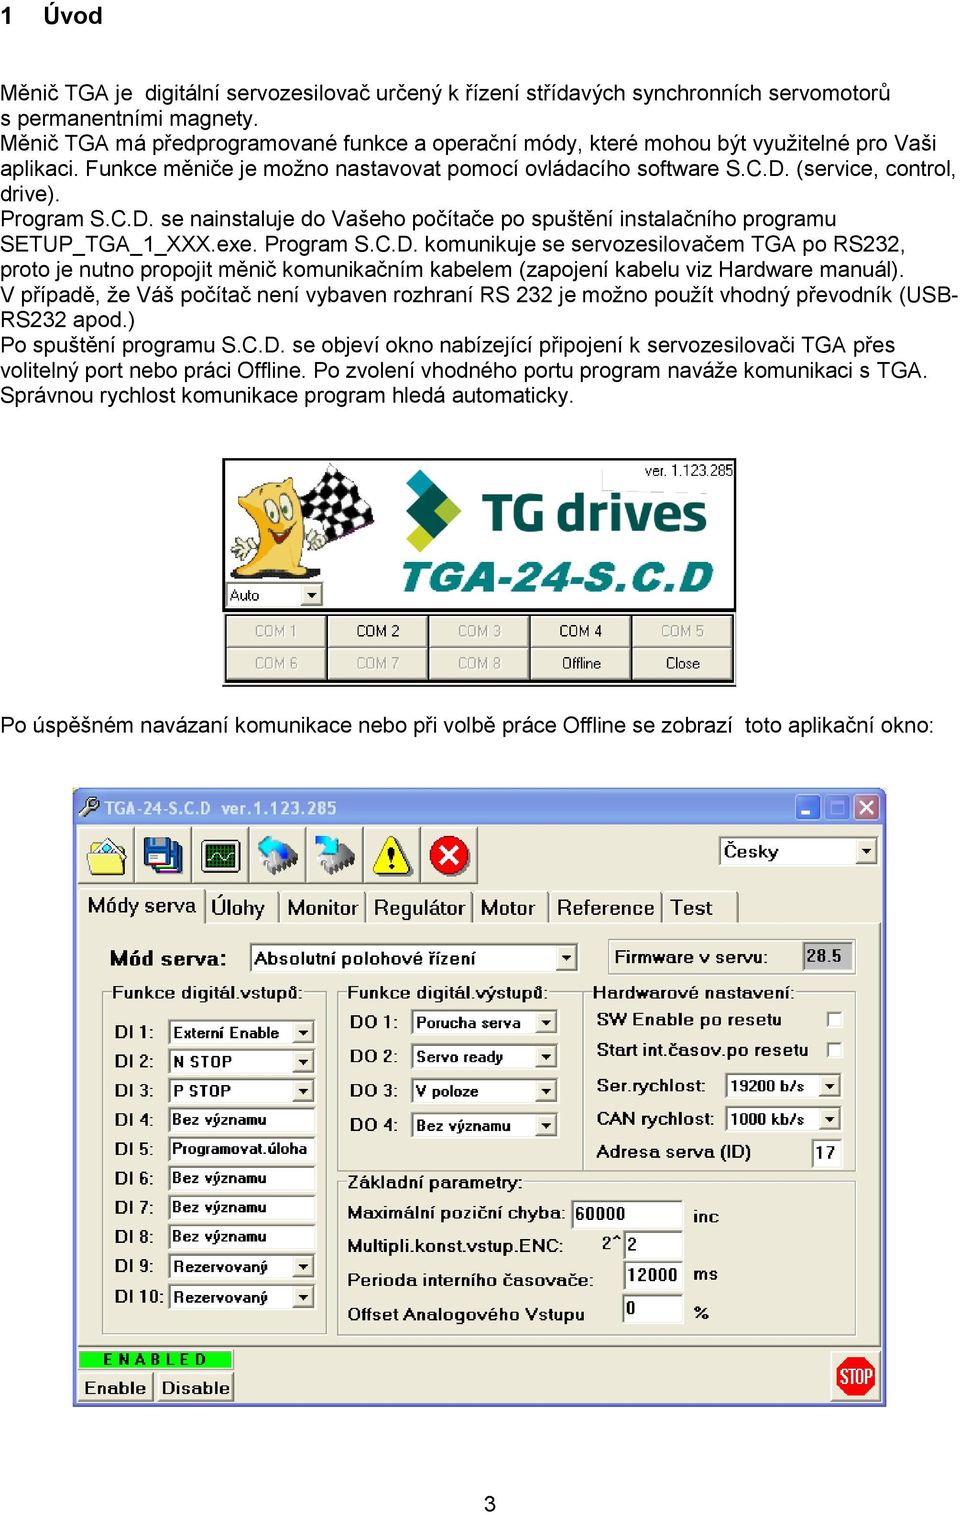 Program S.C.D. se nainstaluje do Vašeho počítače po spuštění instalačního programu SETUP_TGA_1_XXX.exe. Program S.C.D. komunikuje se servozesilovačem TGA po RS232, proto je nutno propojit měnič komunikačním kabelem (zapojení kabelu viz Hardware manuál).